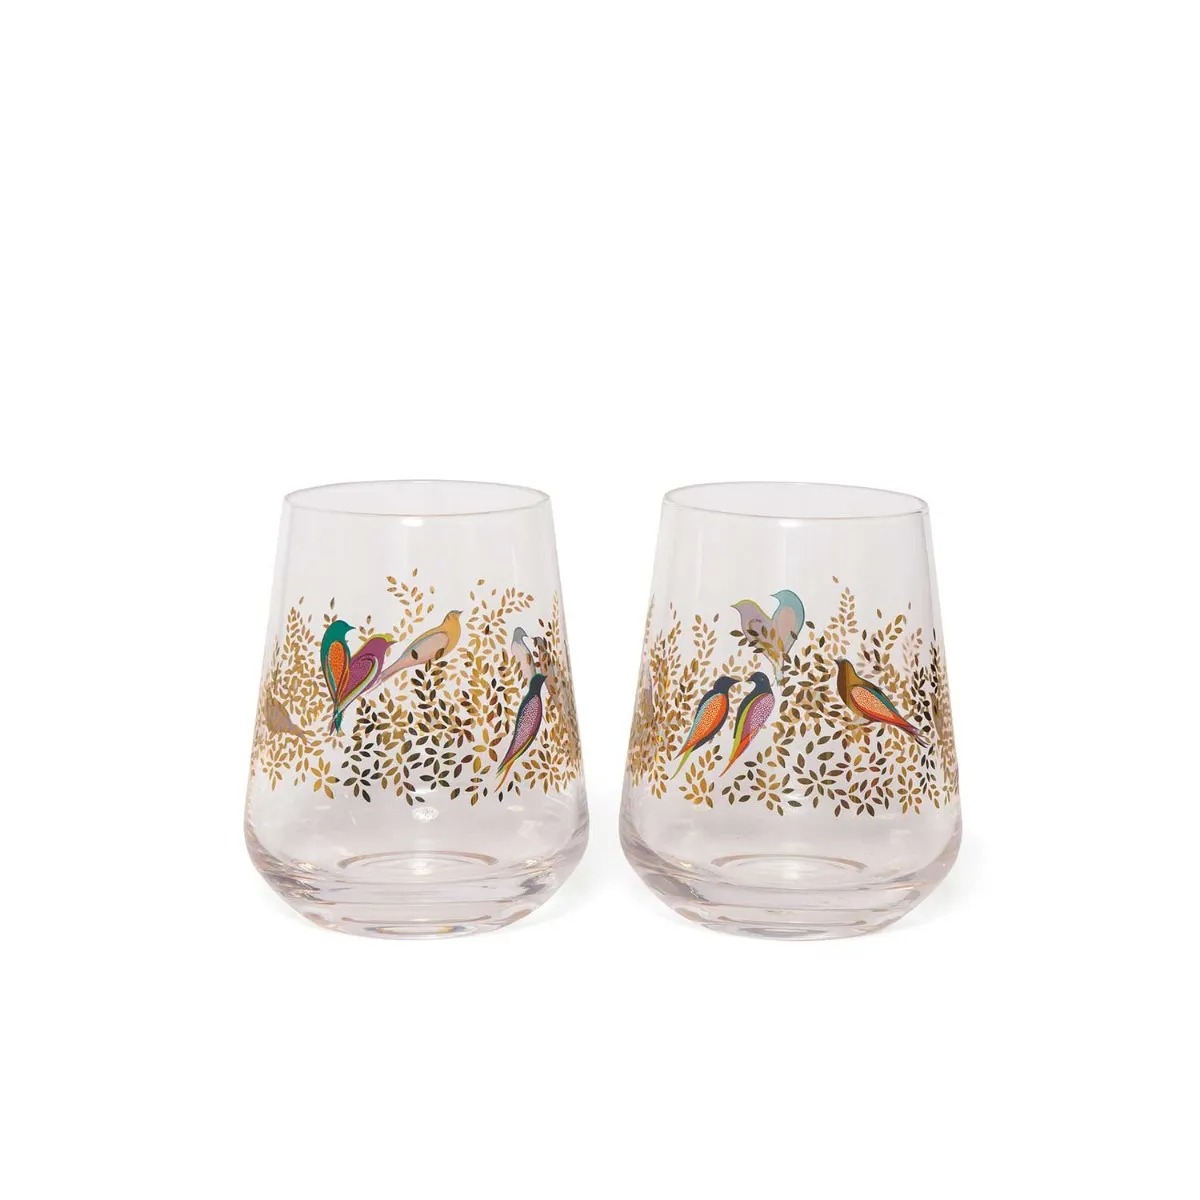 Sara Miller London Chelsea Glass Tumblers - Set of 2